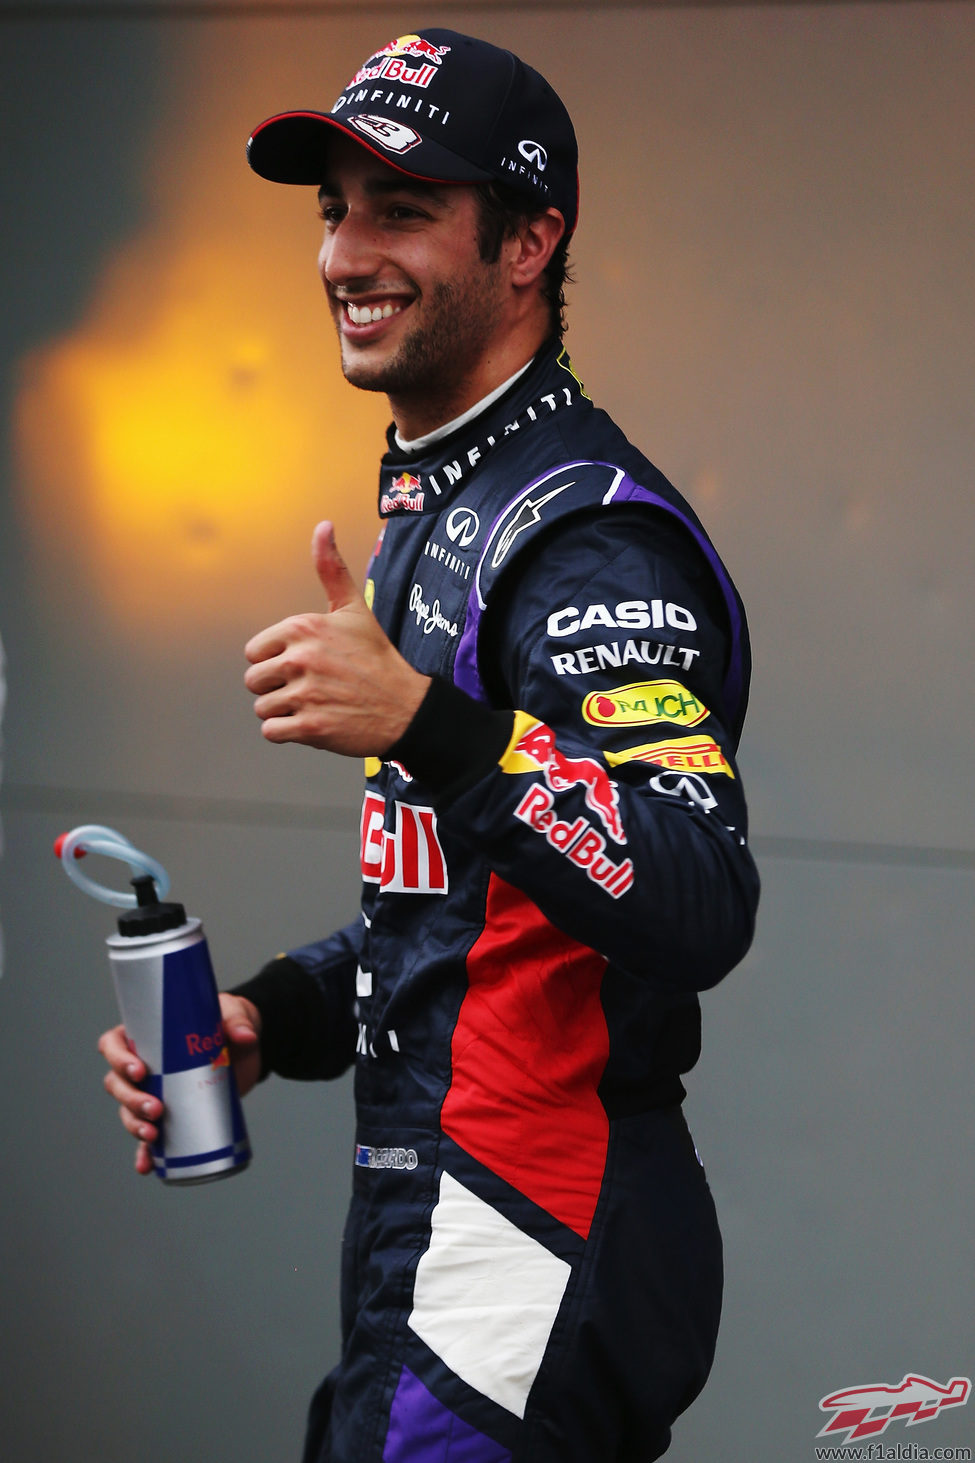 Daniel Ricciardo arranca el año con la segunda plaza en clasificación